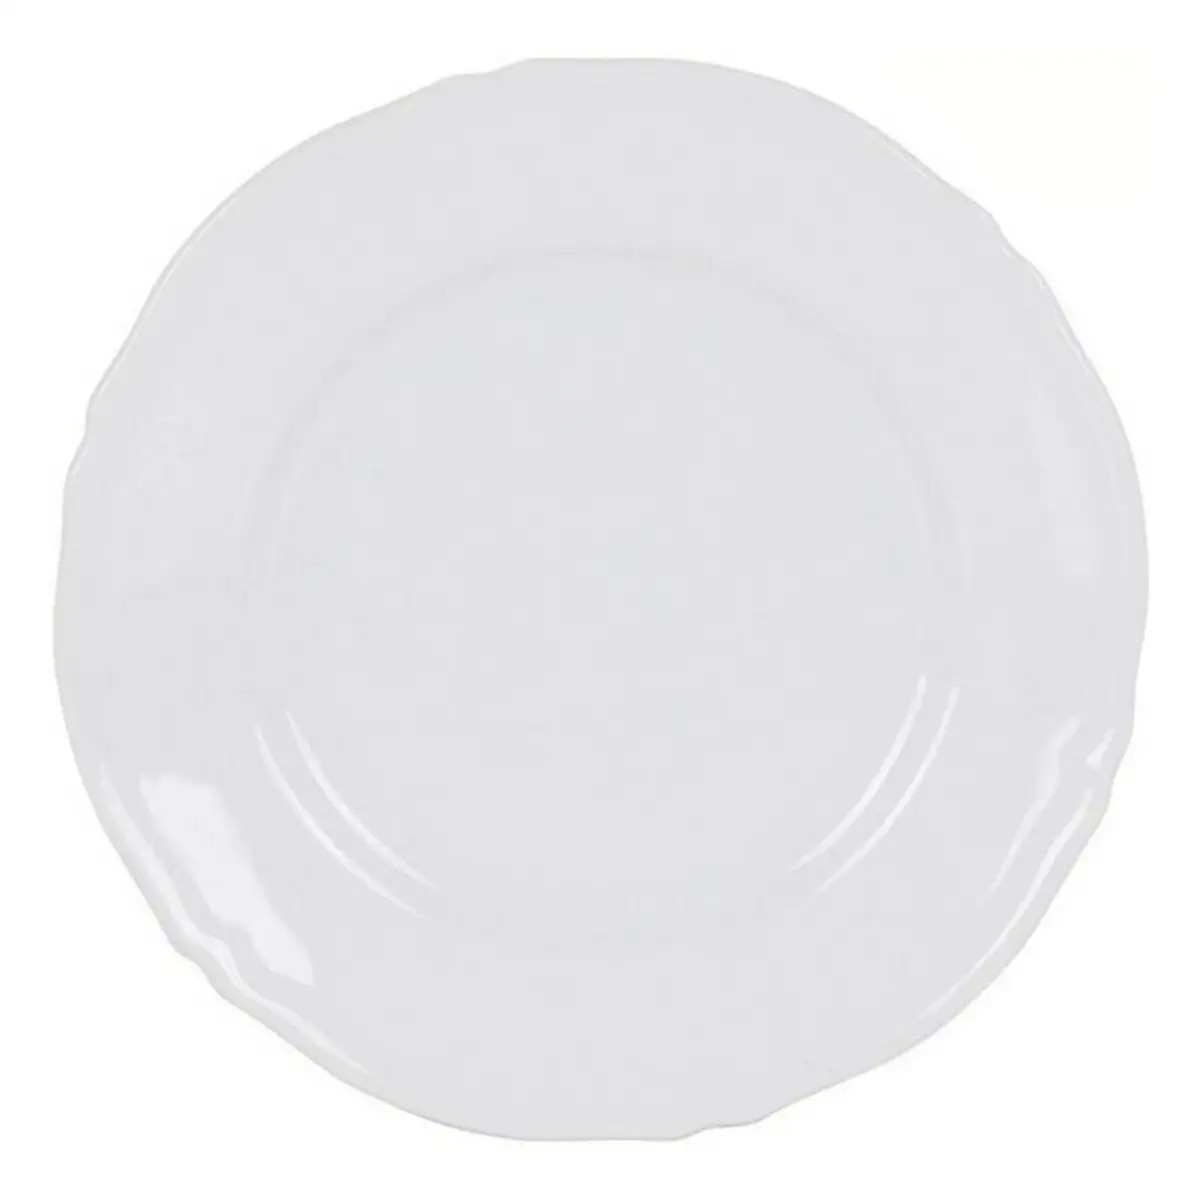 Assiette plate feuille porcelaine blanc o 32 cm _9596. Entrez dans DIAYTAR SENEGAL - Où Chaque Détail Compte. Explorez notre boutique en ligne pour trouver des produits de haute qualité, soigneusement choisis pour répondre à vos besoins et vos désirs.